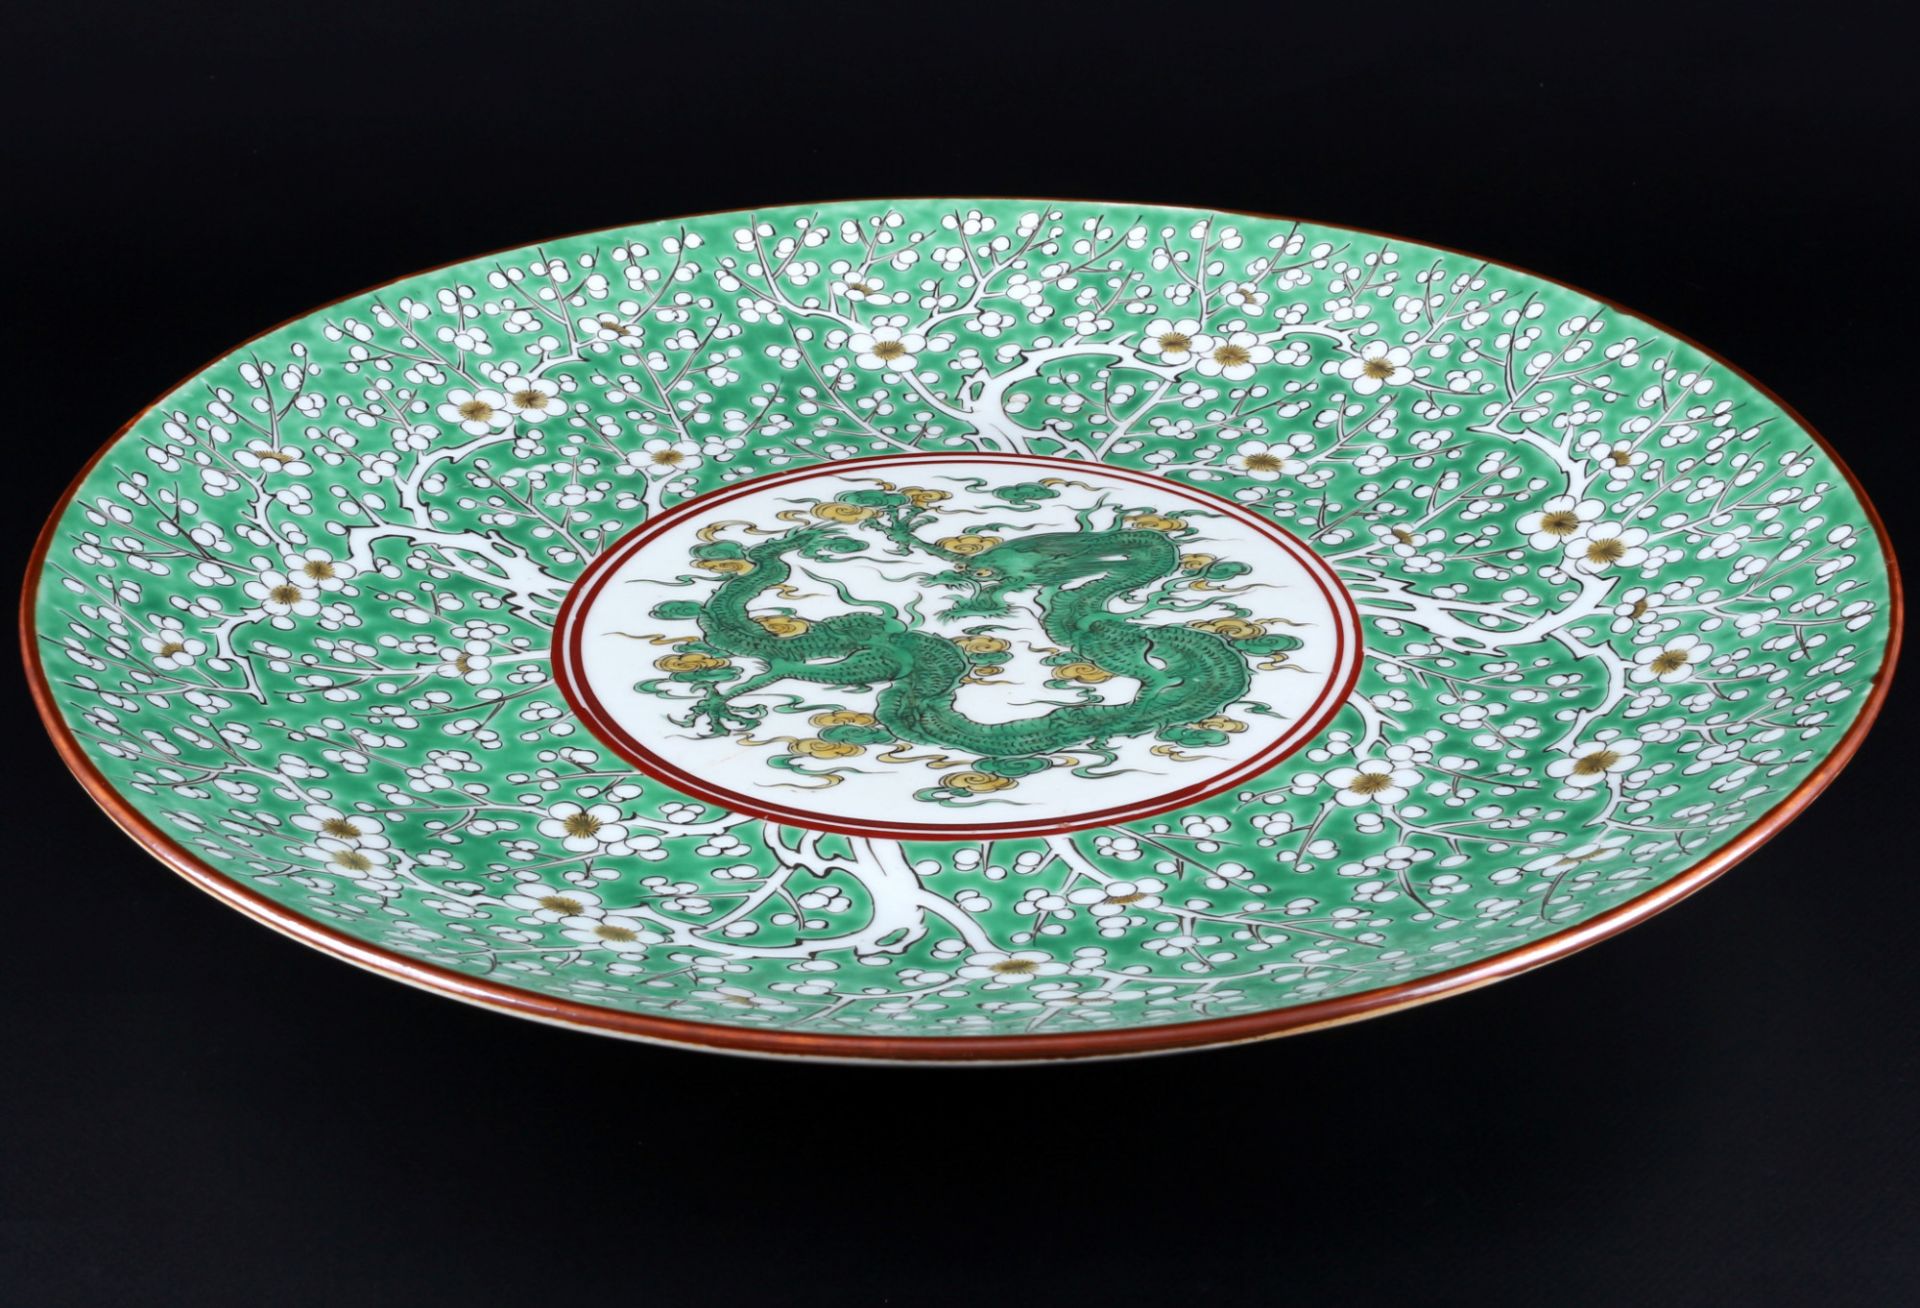 Japan riesige Drachen Platte / Schale Meiji-Periode D 46,5 cm, large dragon plate / bowl, - Bild 2 aus 4